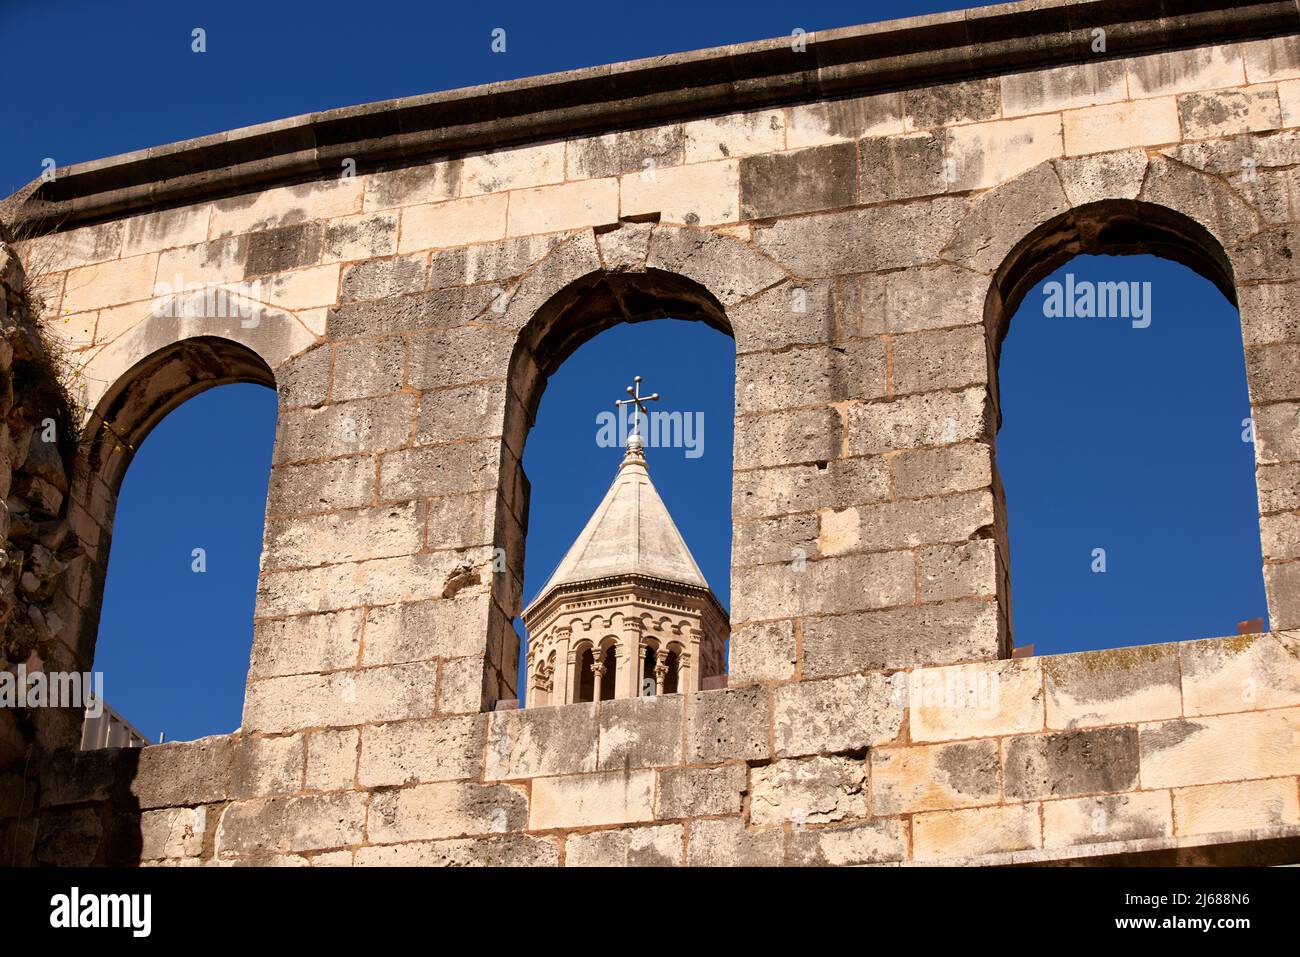 La ville de Split en Croatie dans la région de Dalmatie, site touristique de la cathédrale Saint Domnius Banque D'Images